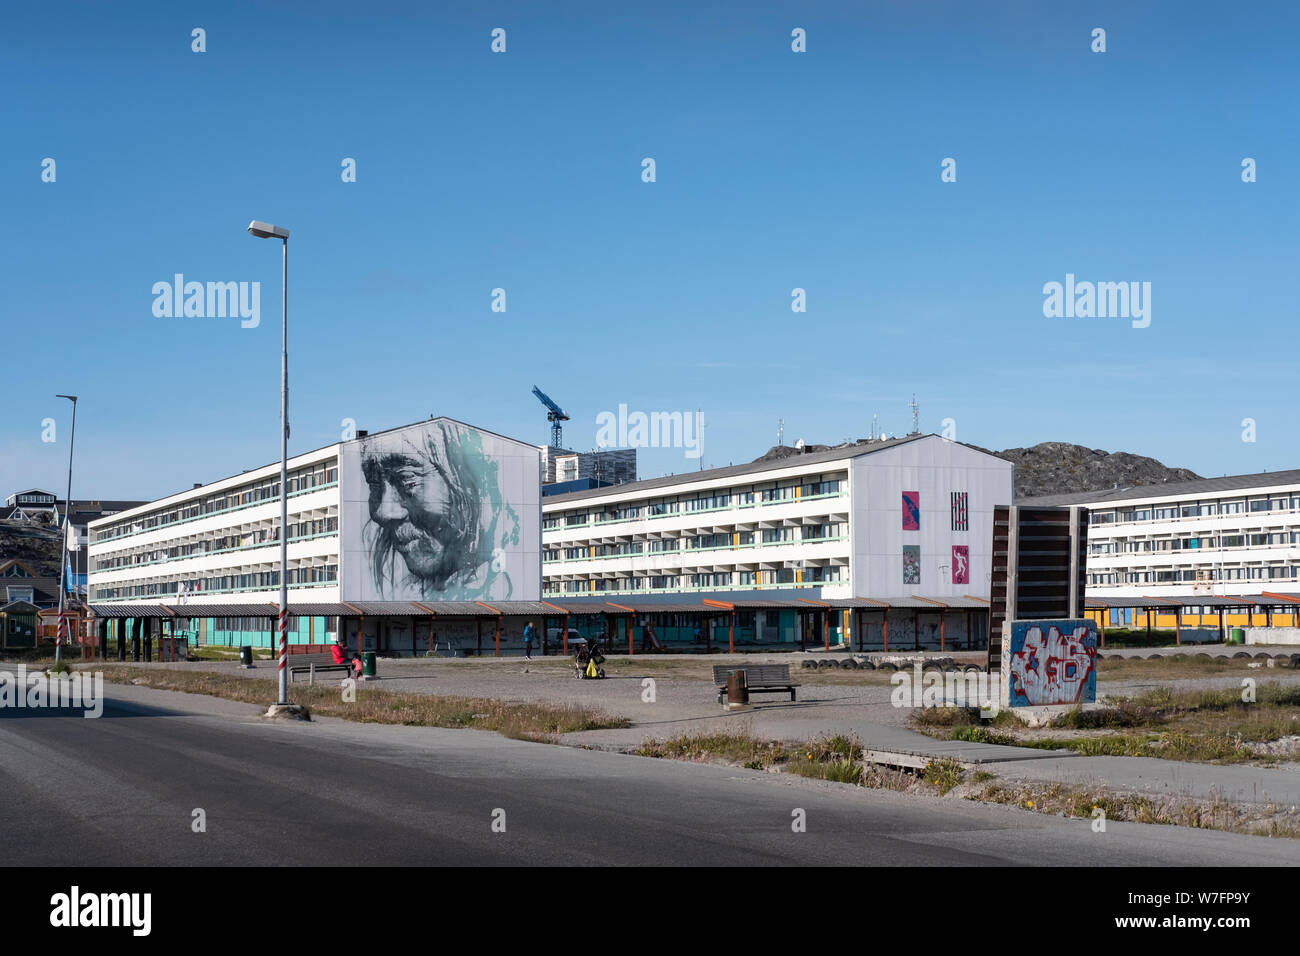 Les immeubles à appartements dans le centre de Nuuk, capitale du Groenland. Nuuk est la plus grande ville du Groenland avec environ 18.000 habitants. Banque D'Images